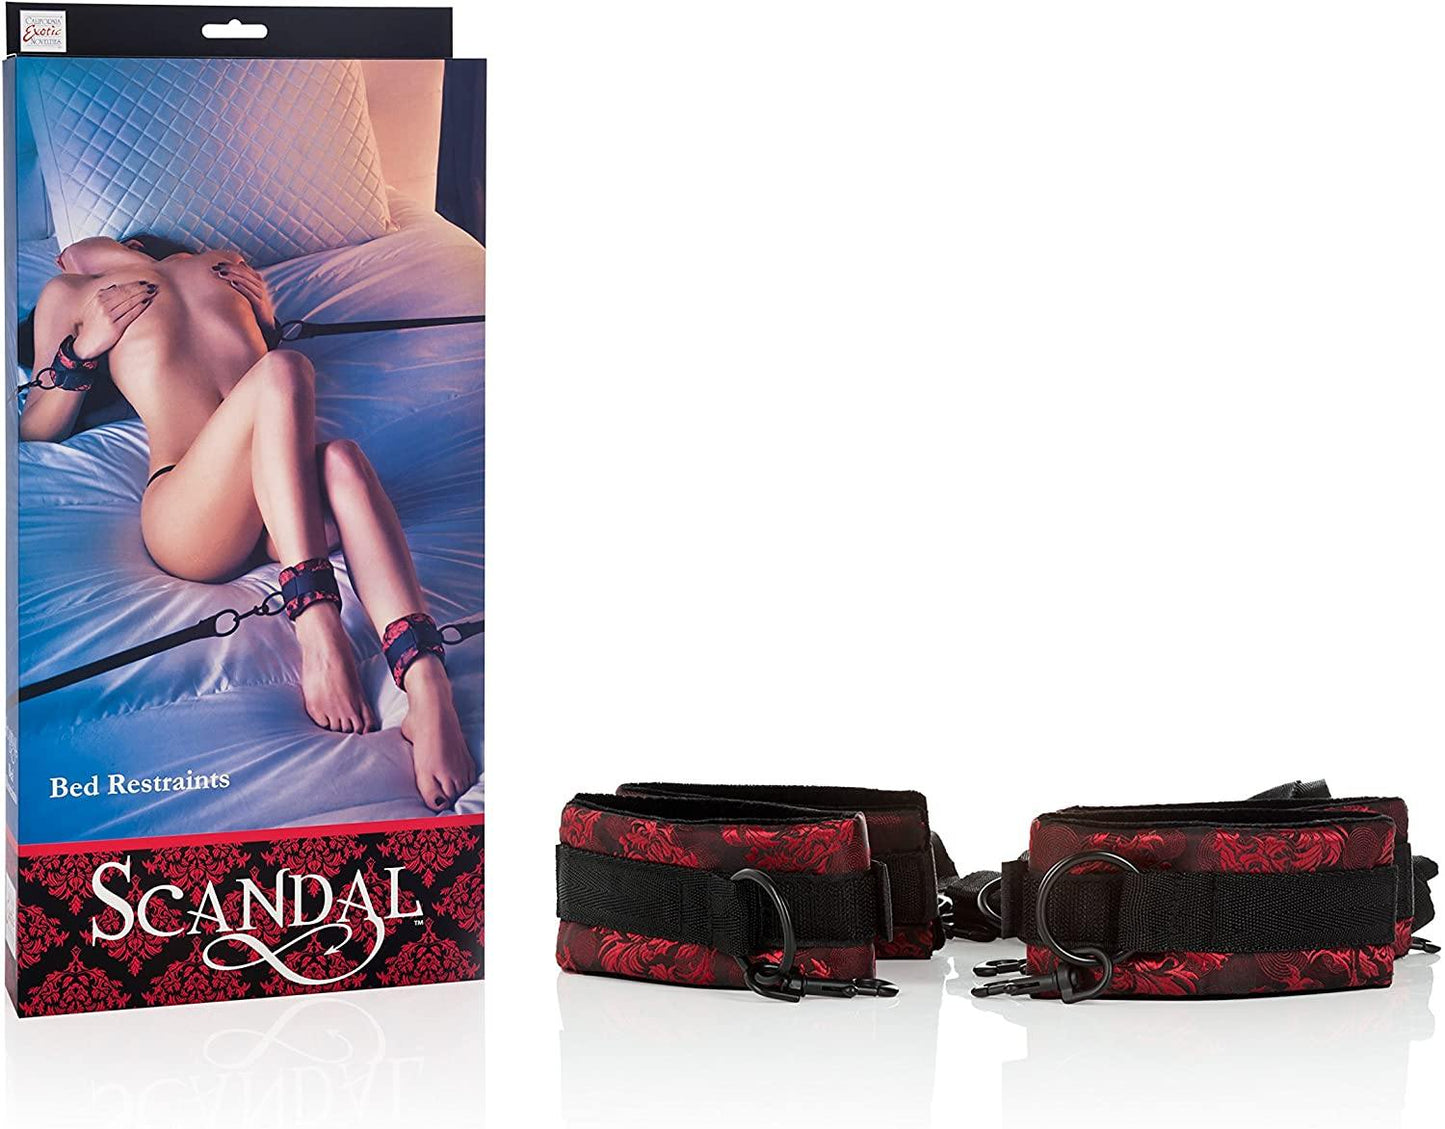 Scandal - Bed Restraints & Cuff Set - Boink Adult Boutique www.boinkmuskoka.com